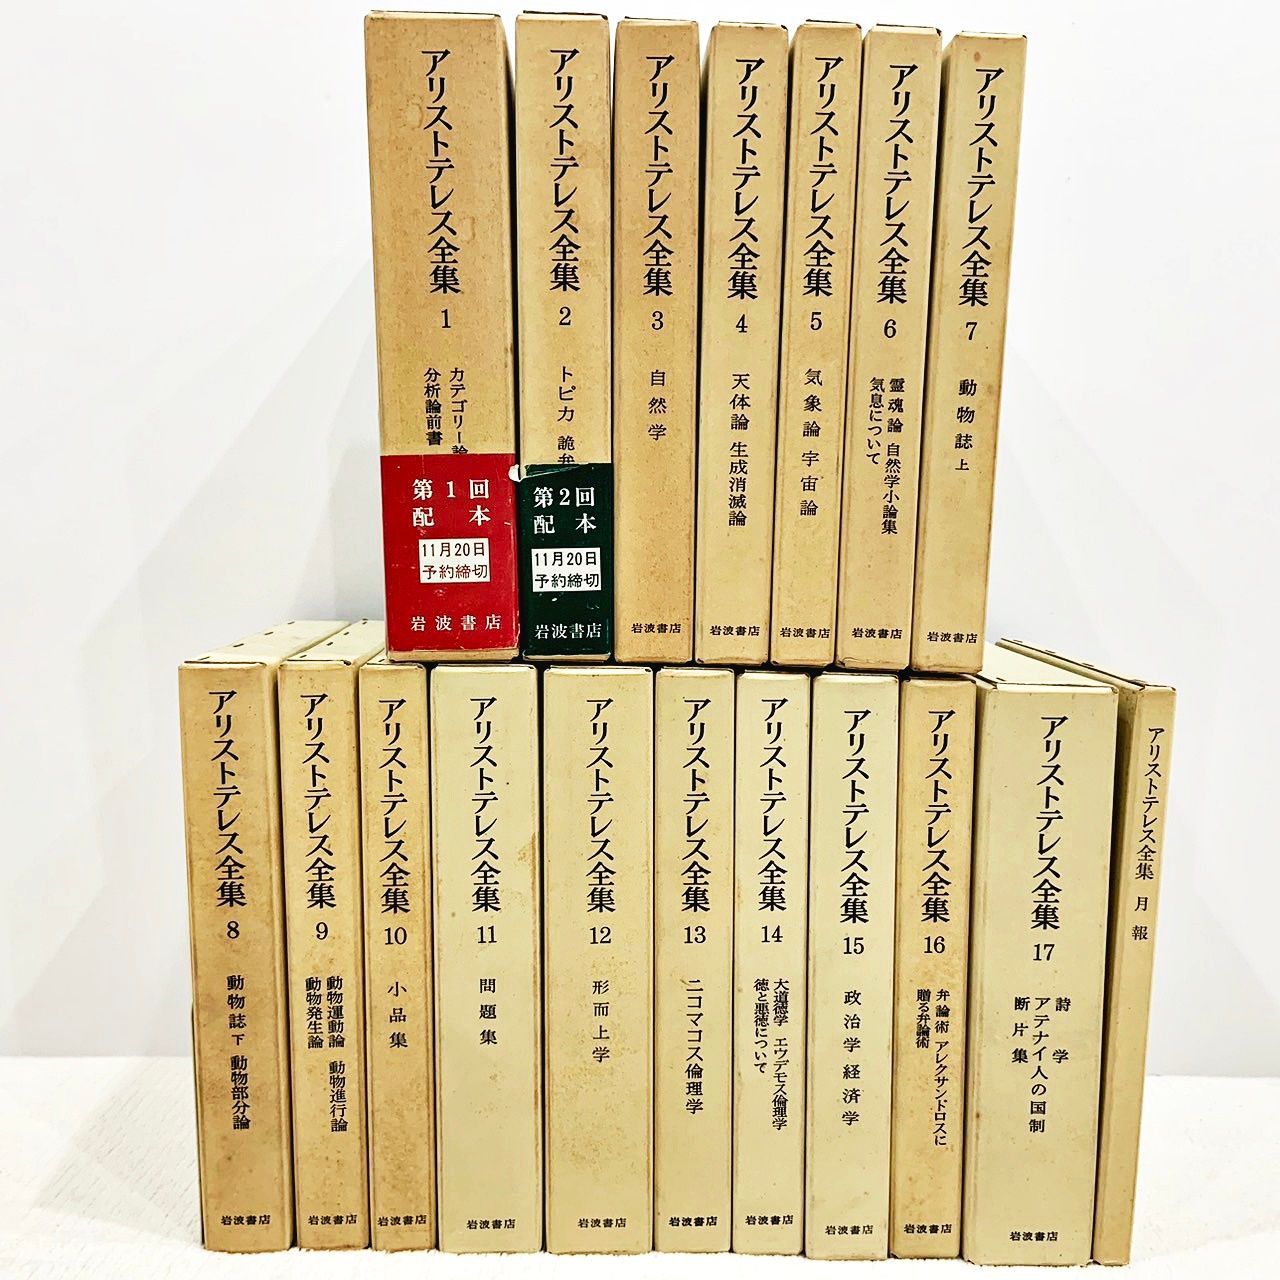 アリストテレス全集 全17巻 + 月報(合計18冊) 岩波書店 - メルカリ